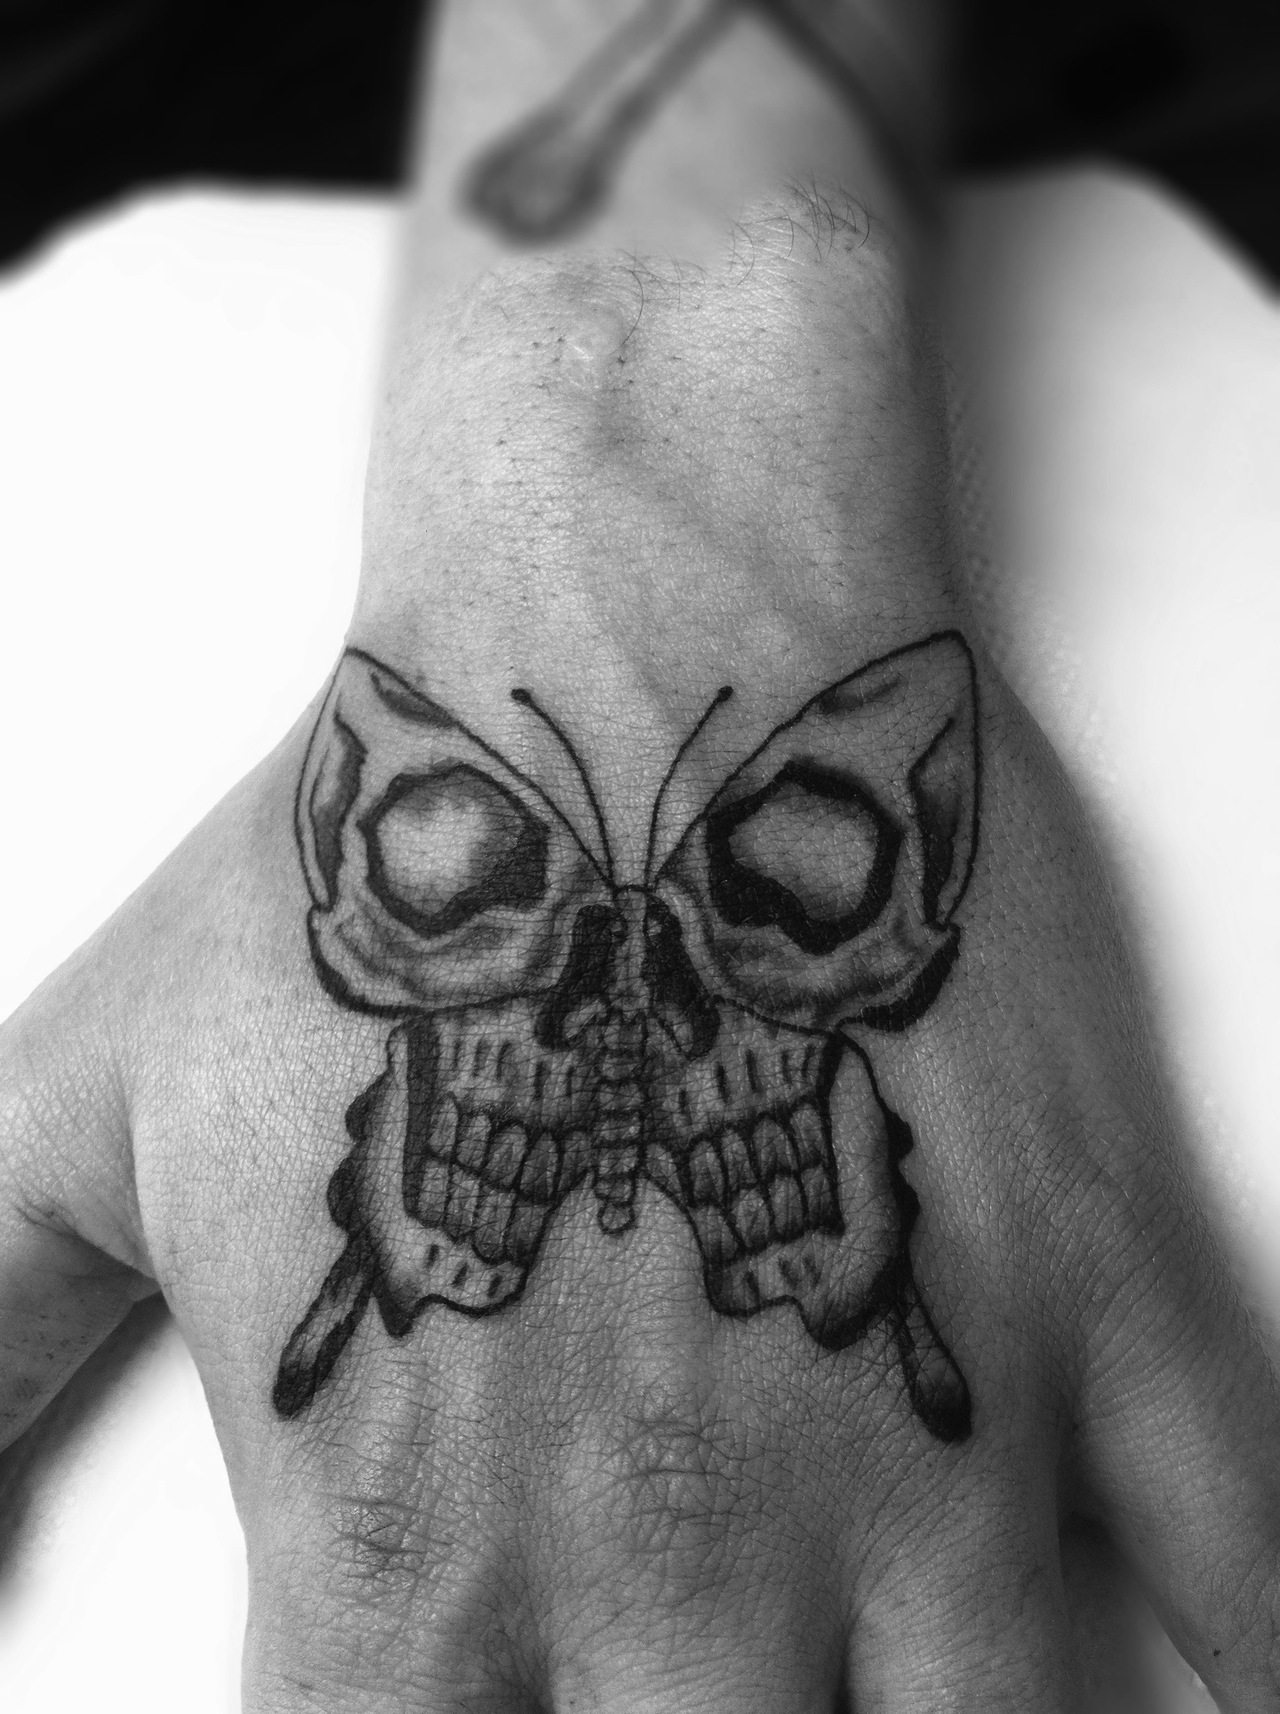 Butterfly Skull Tattoo On Hand For Men